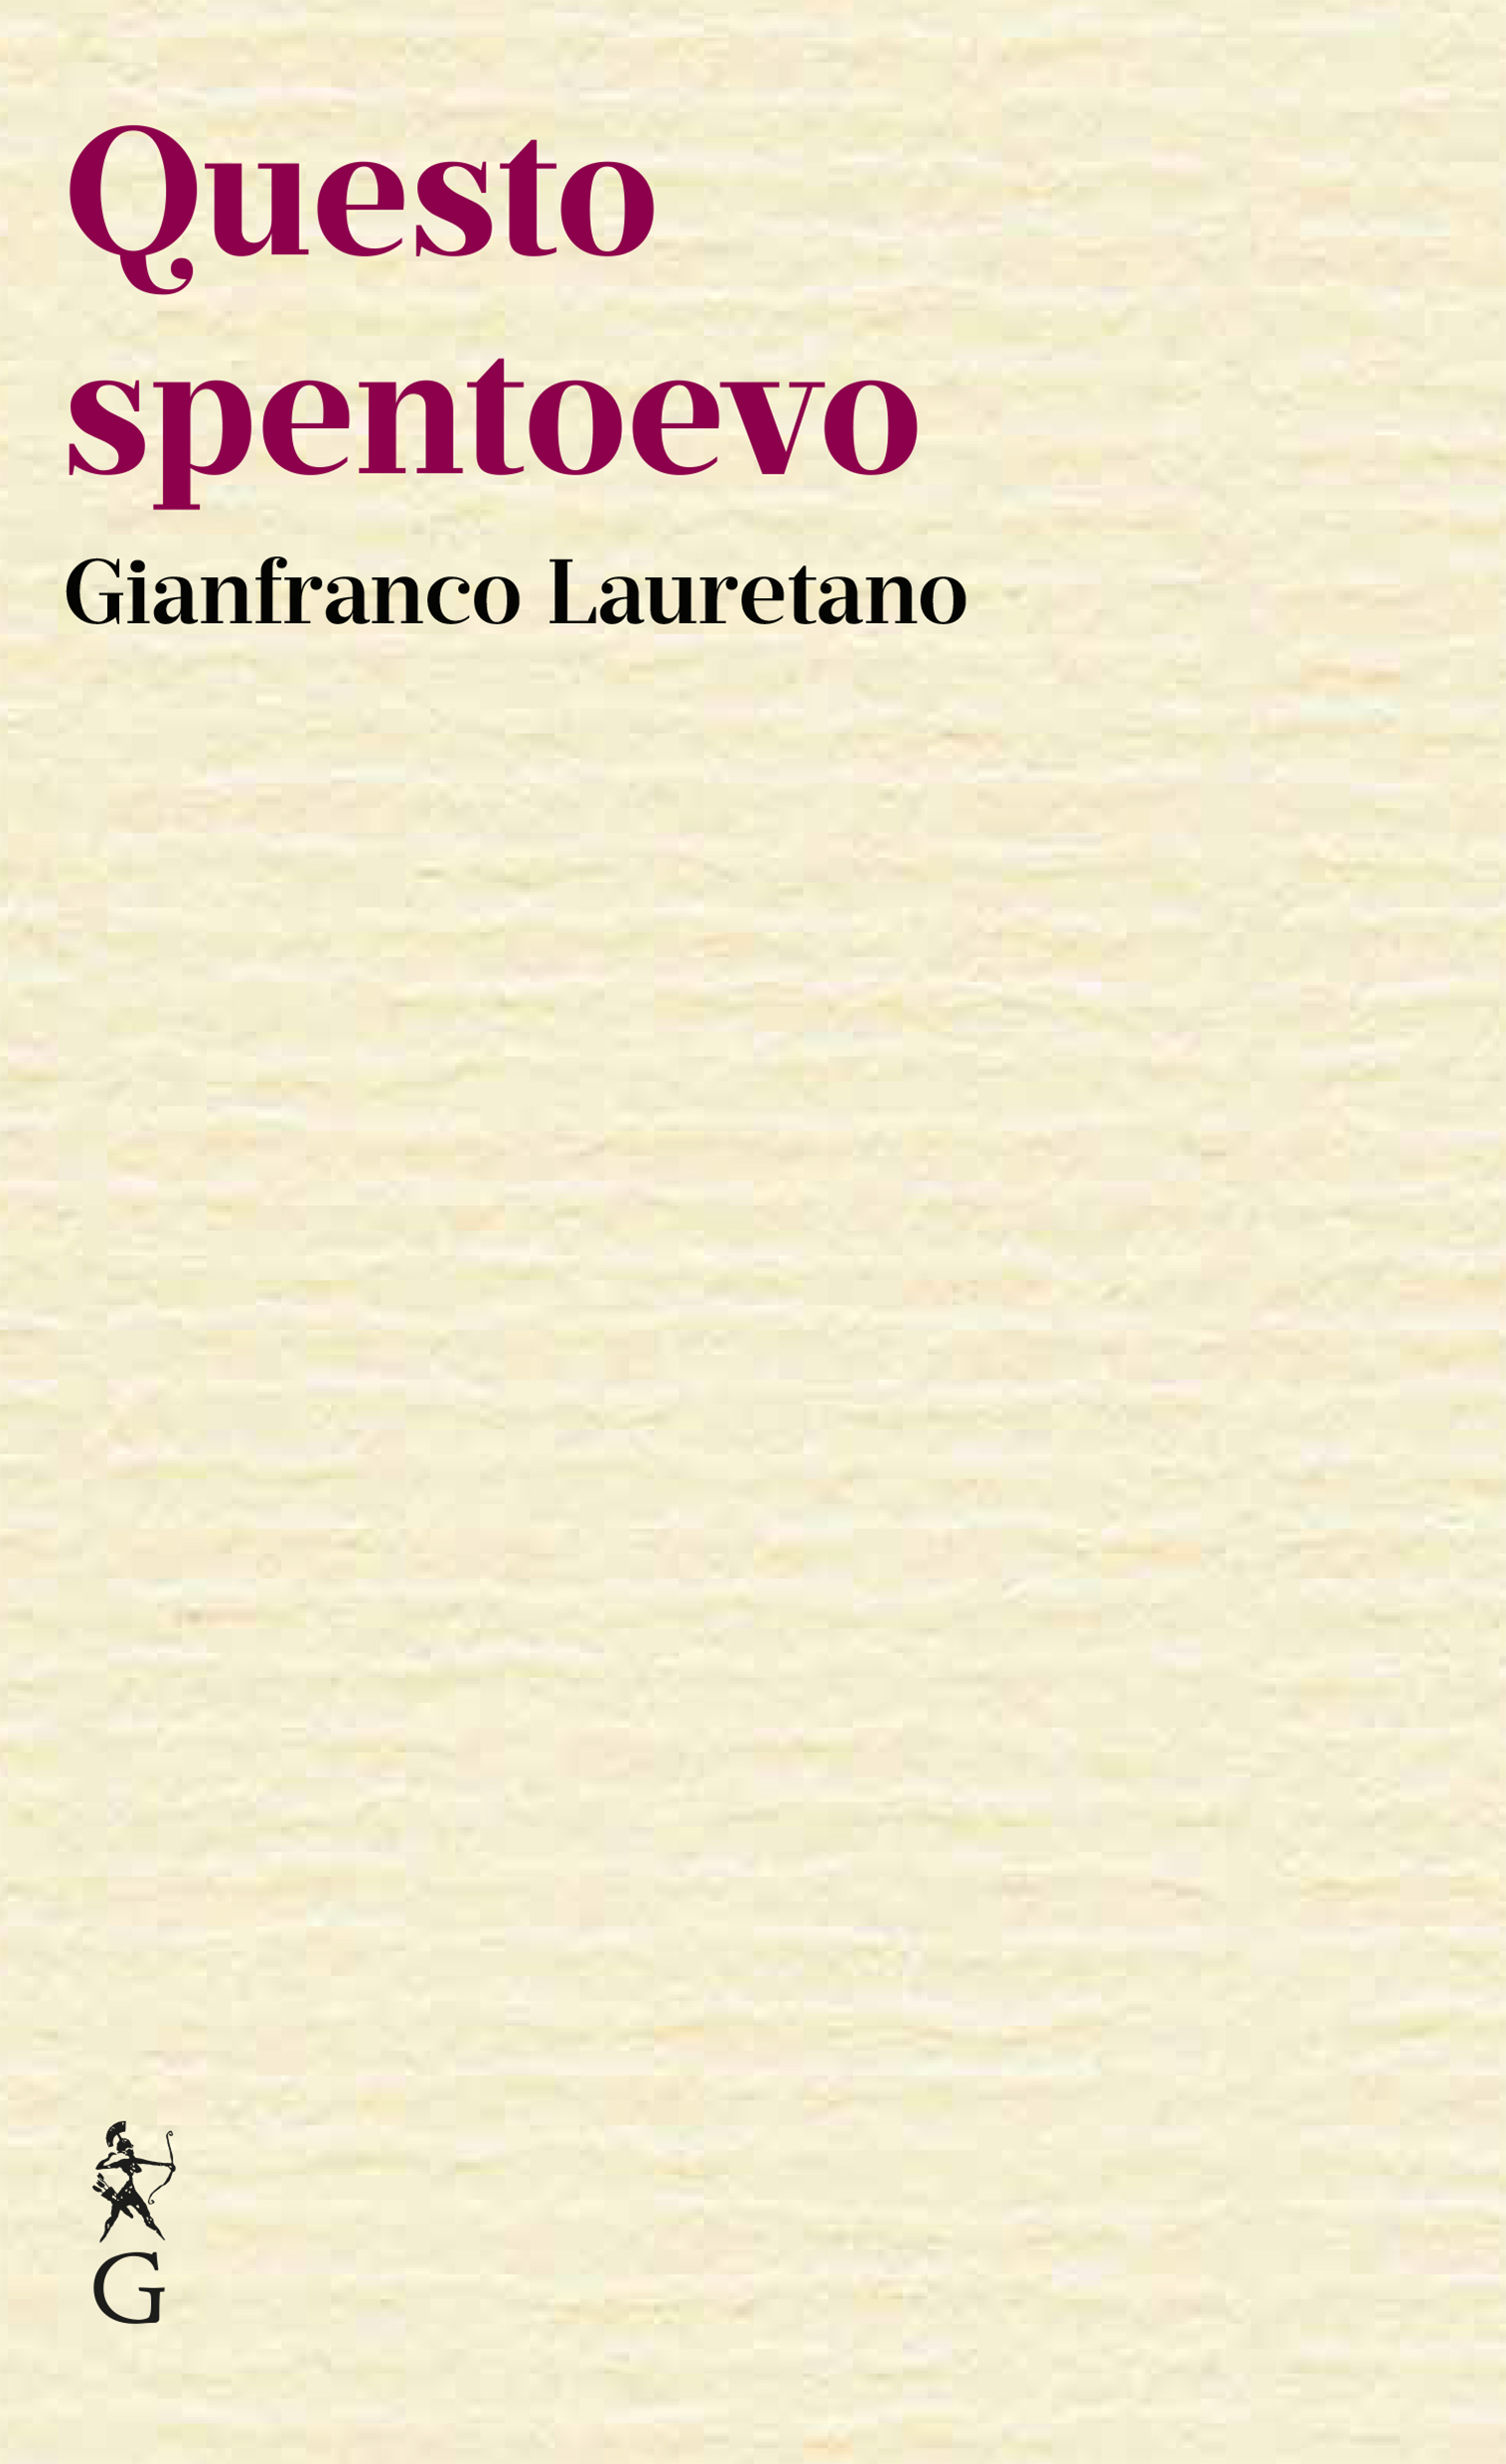 Questo spentoevo | Libro di Gianfranco Lauretano | Graphe.it